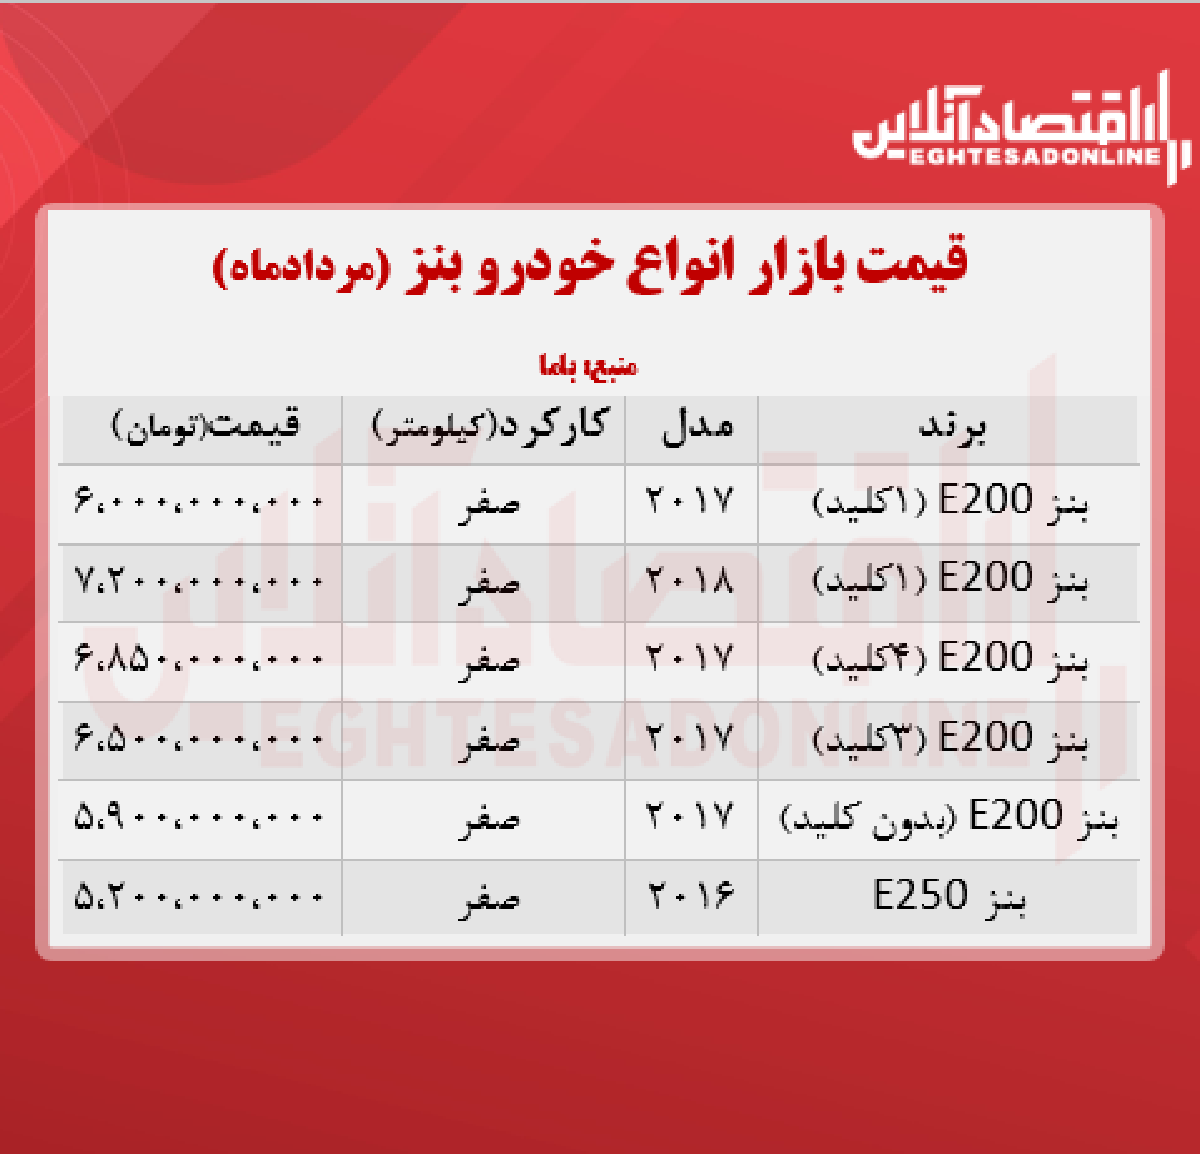 قیمت جدید انواع بنز در ایران + جدول